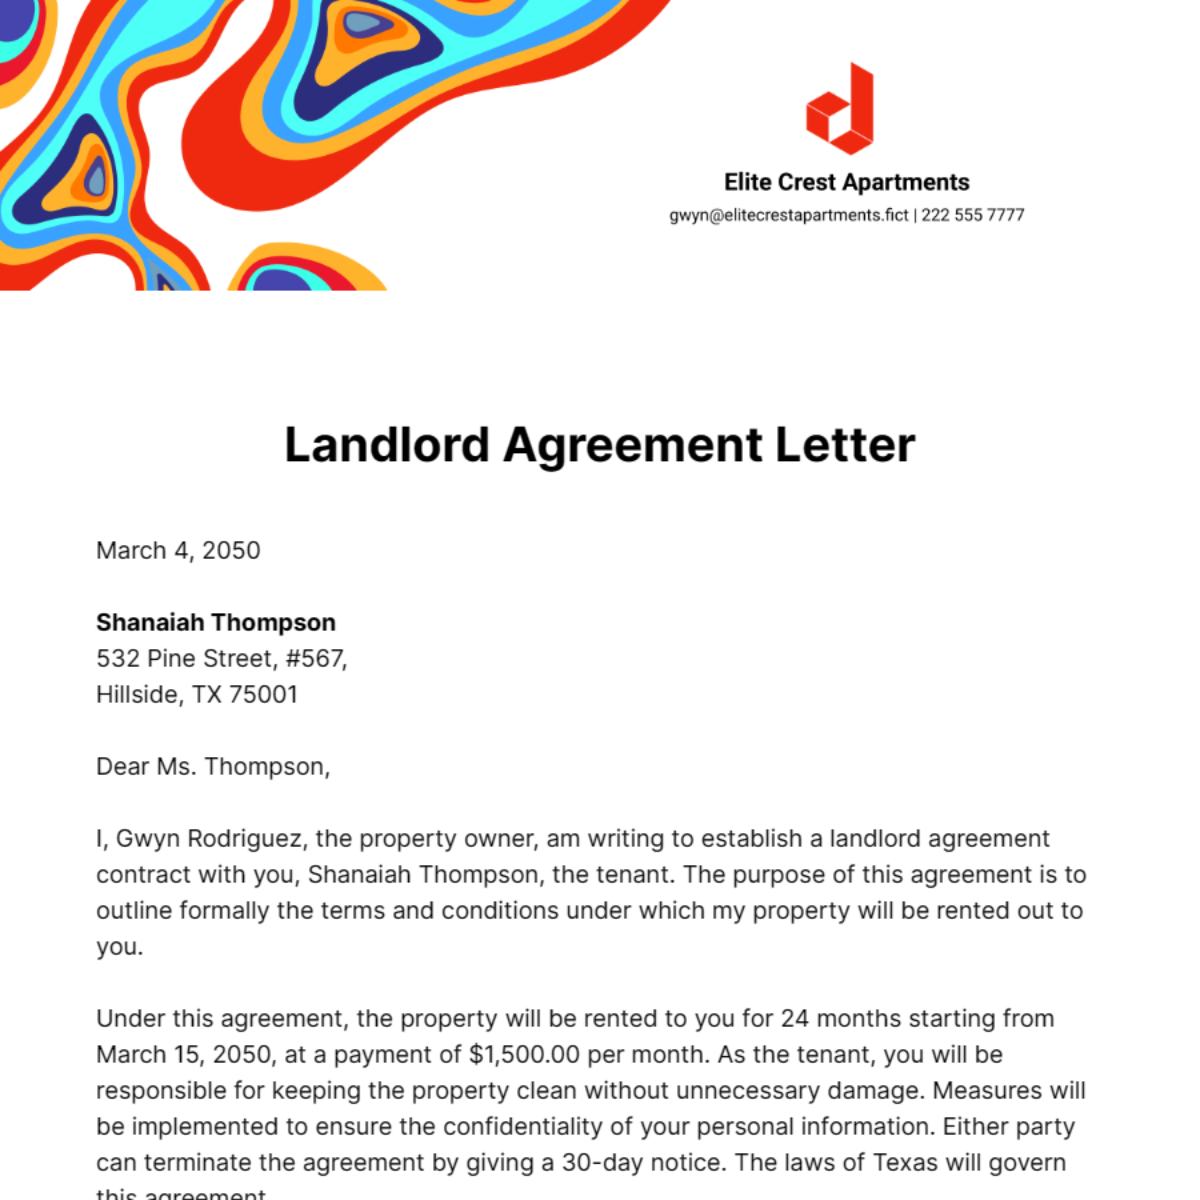 Landlord Agreement Letter Template